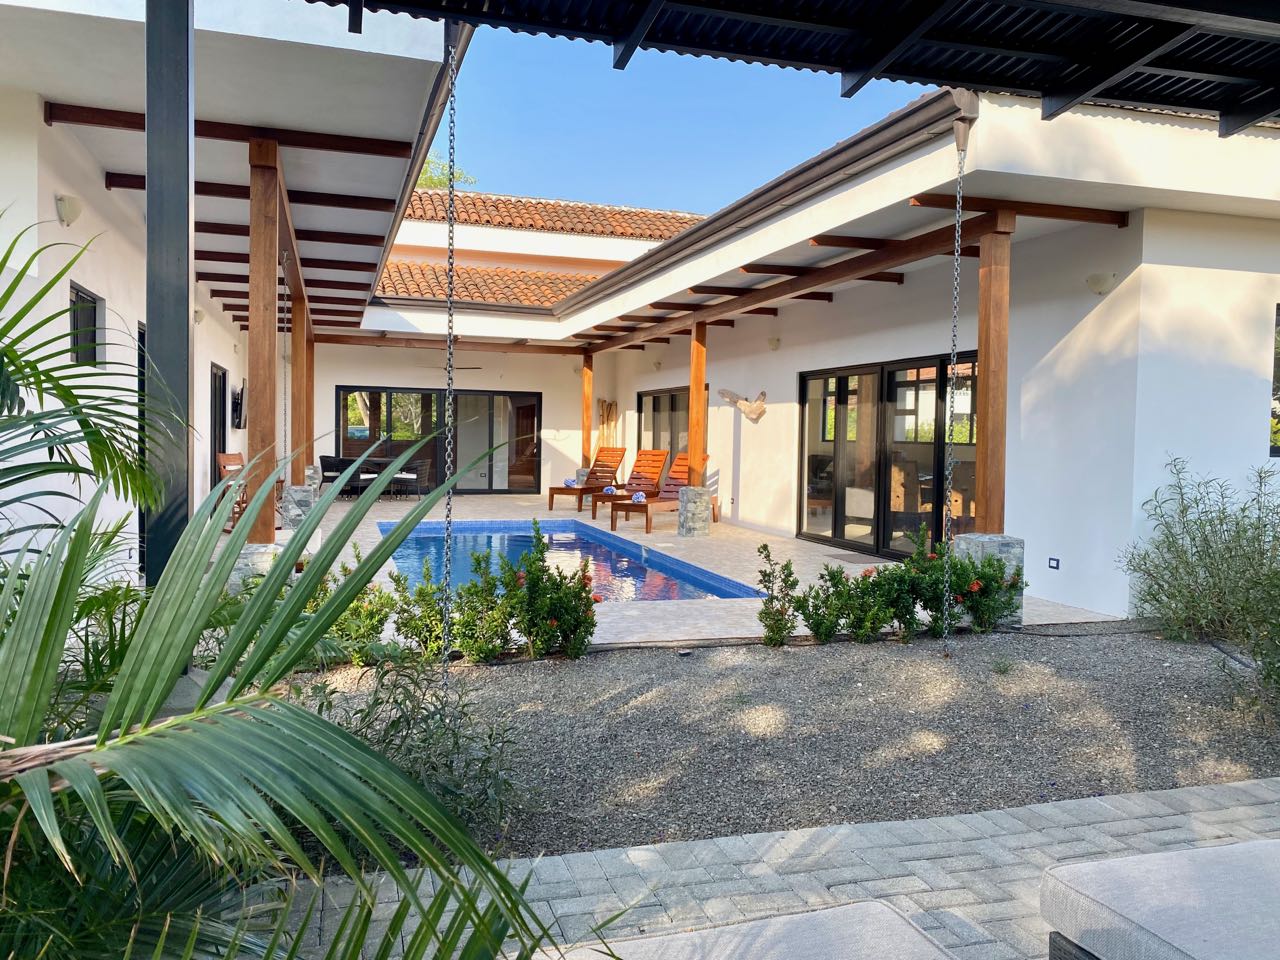 Financed Luxury Resort Villas Costa Rica Real Estate MLS Alternative